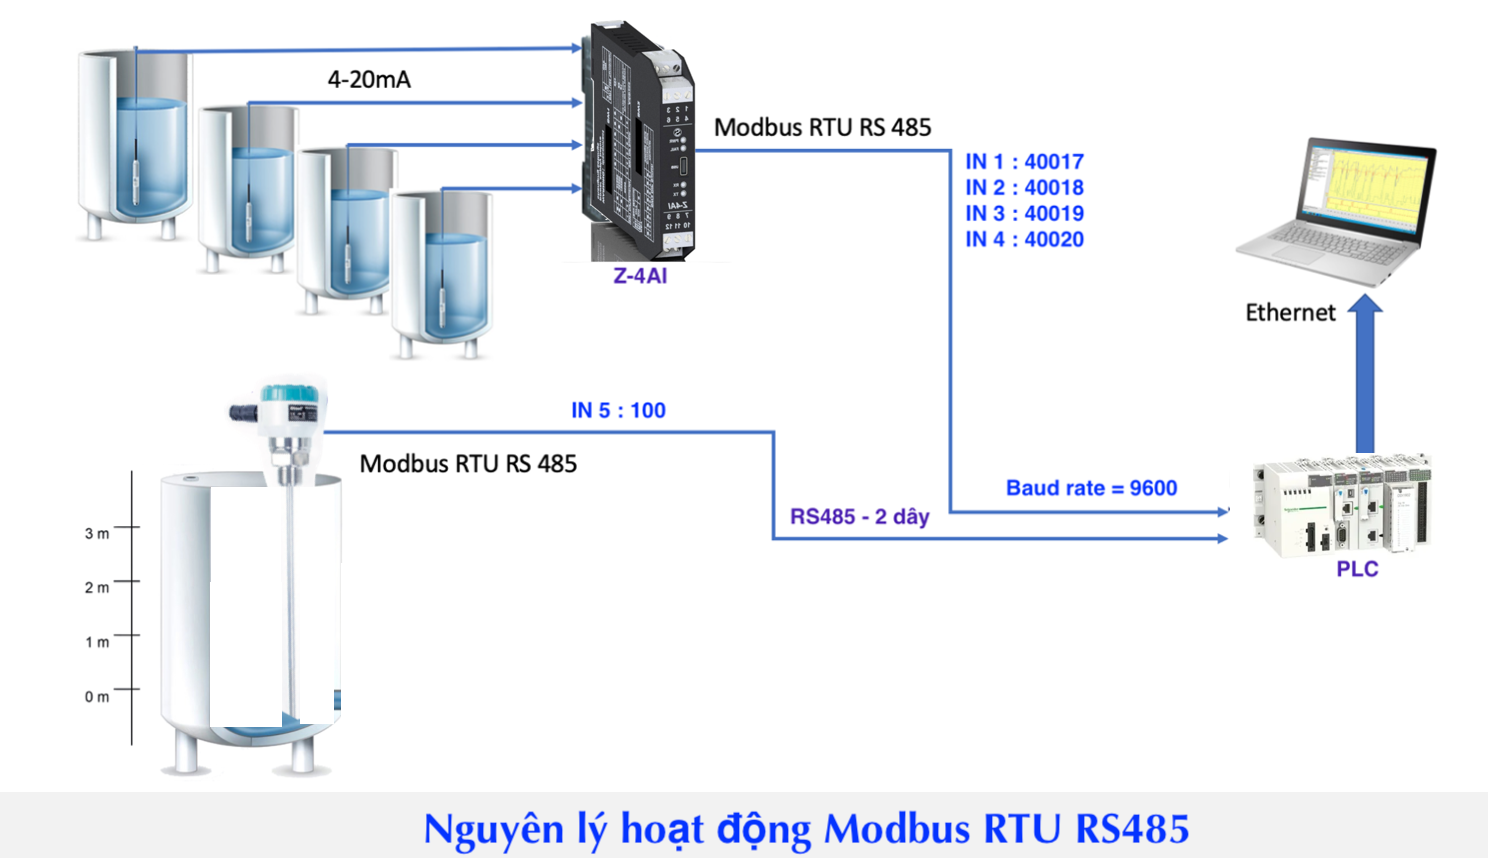 Nguyên lý hoạt động Modbus RTU RS485